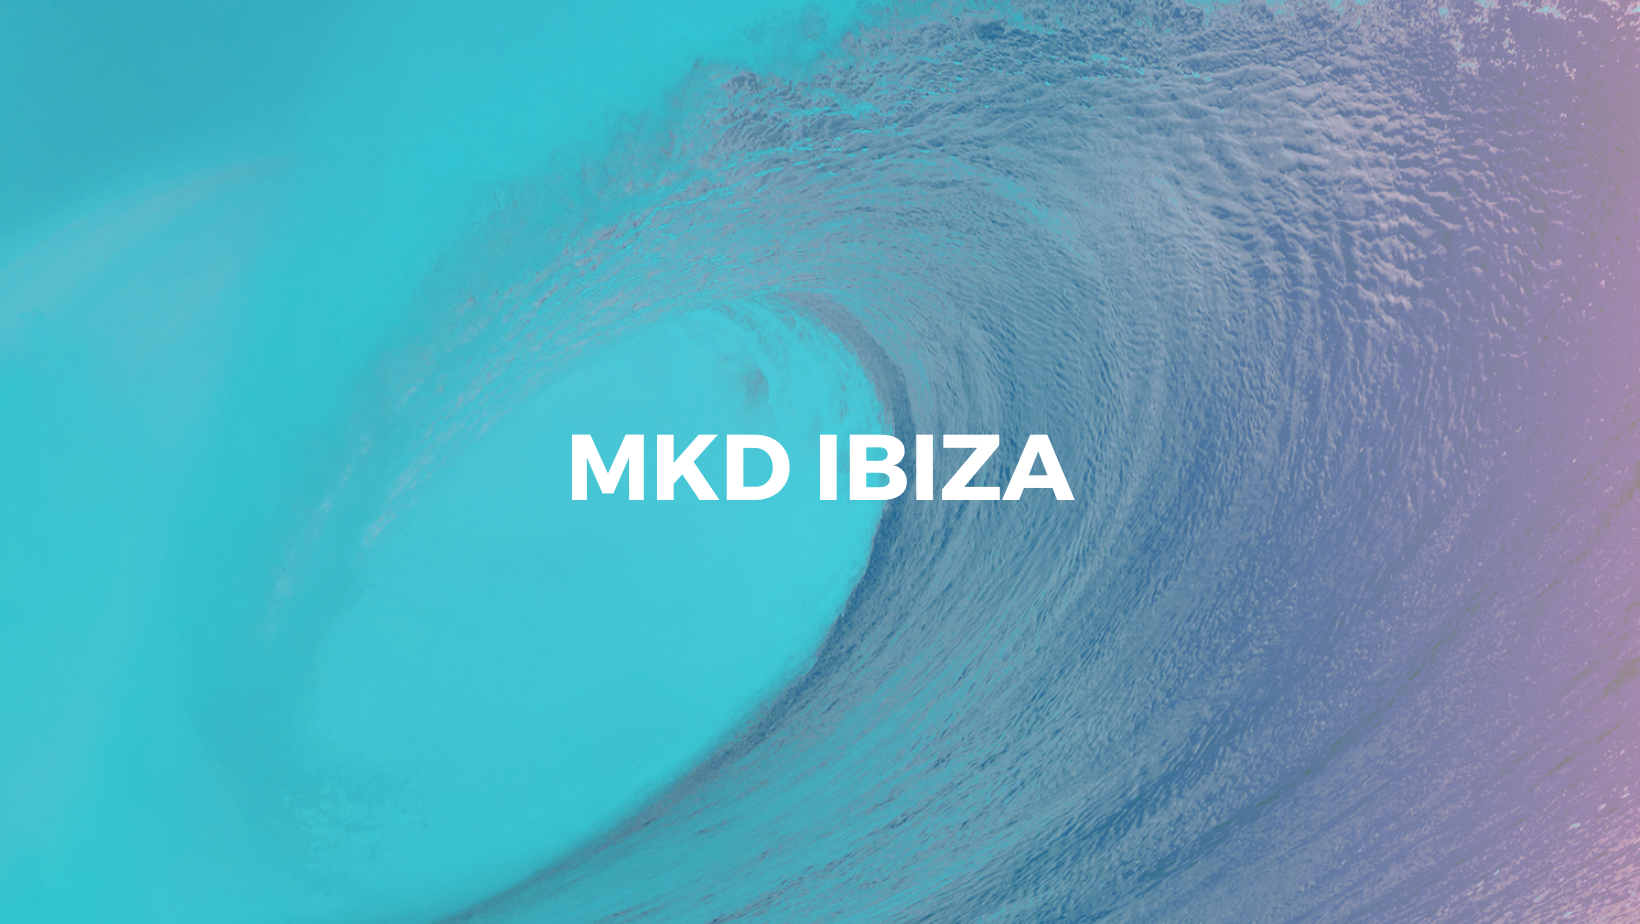 MKD Ibiza - Agencia de marketing digitial